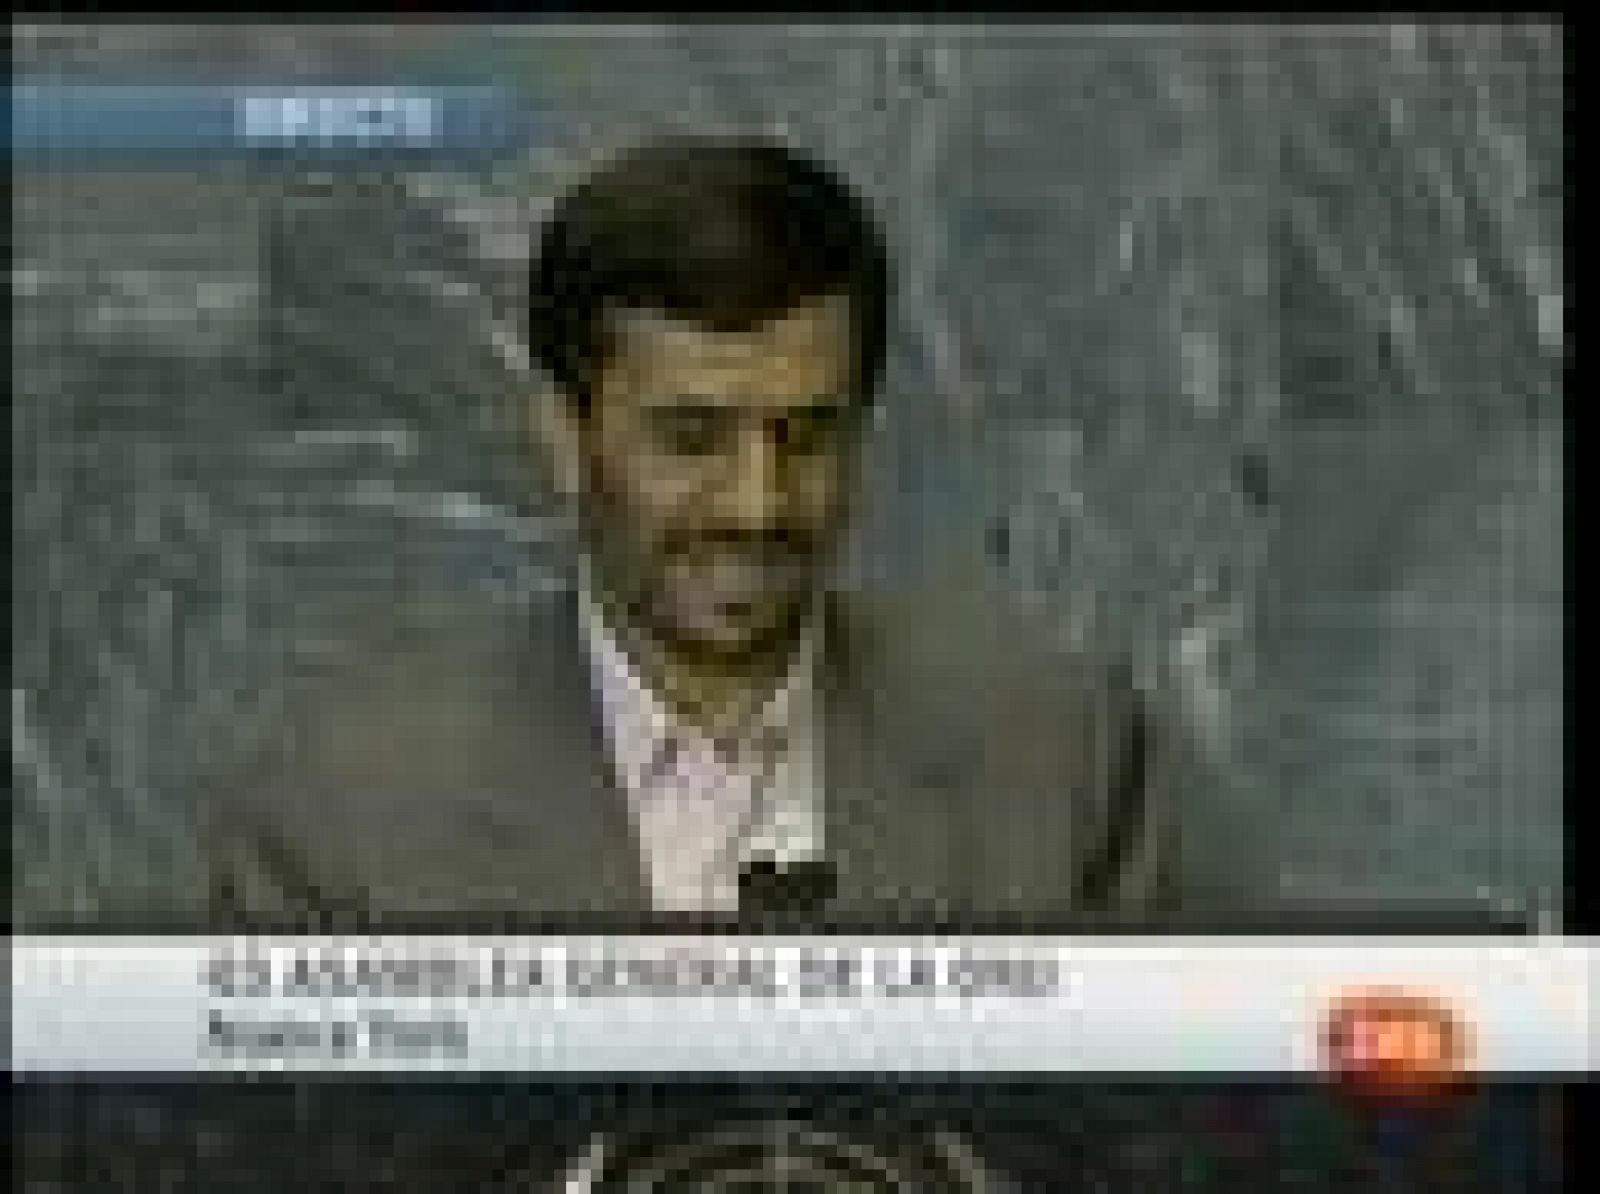 El Presidente de Irán, Mahmud Ahmadineyad, ha intervenido en la Asamblea General en la ONU con un discurso crítico con Estados Unidos en el que defendió "el inalienable derecho de todas las naciones a producir energía nuclear para fines pacíficos".